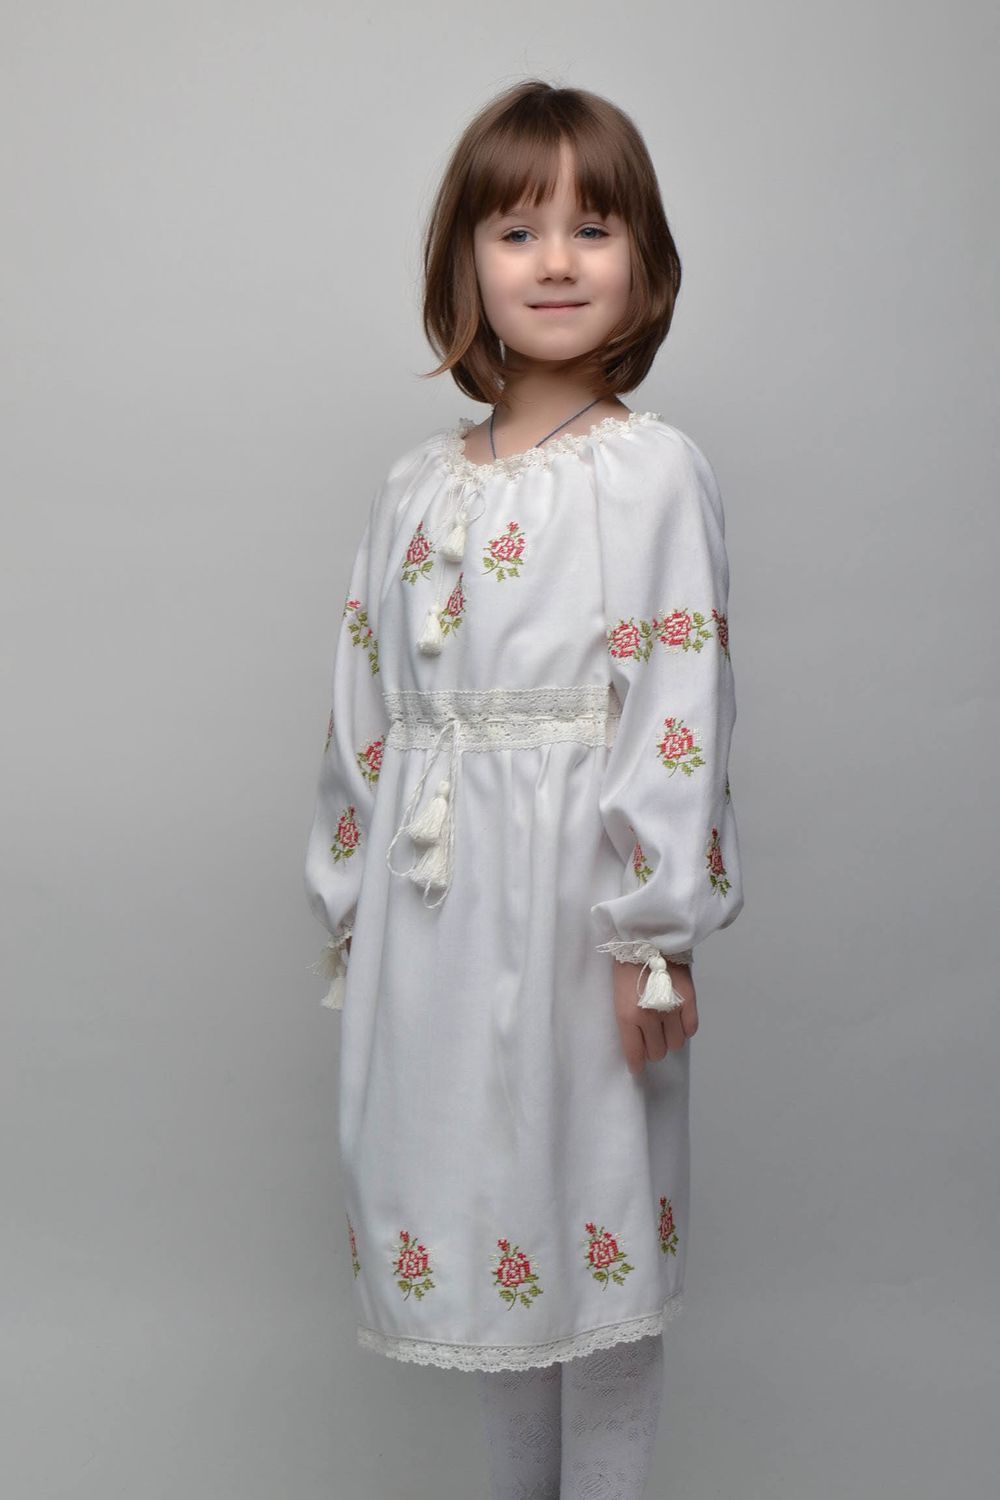 Robe brodée avec ceinture pour enfant faite main photo 1